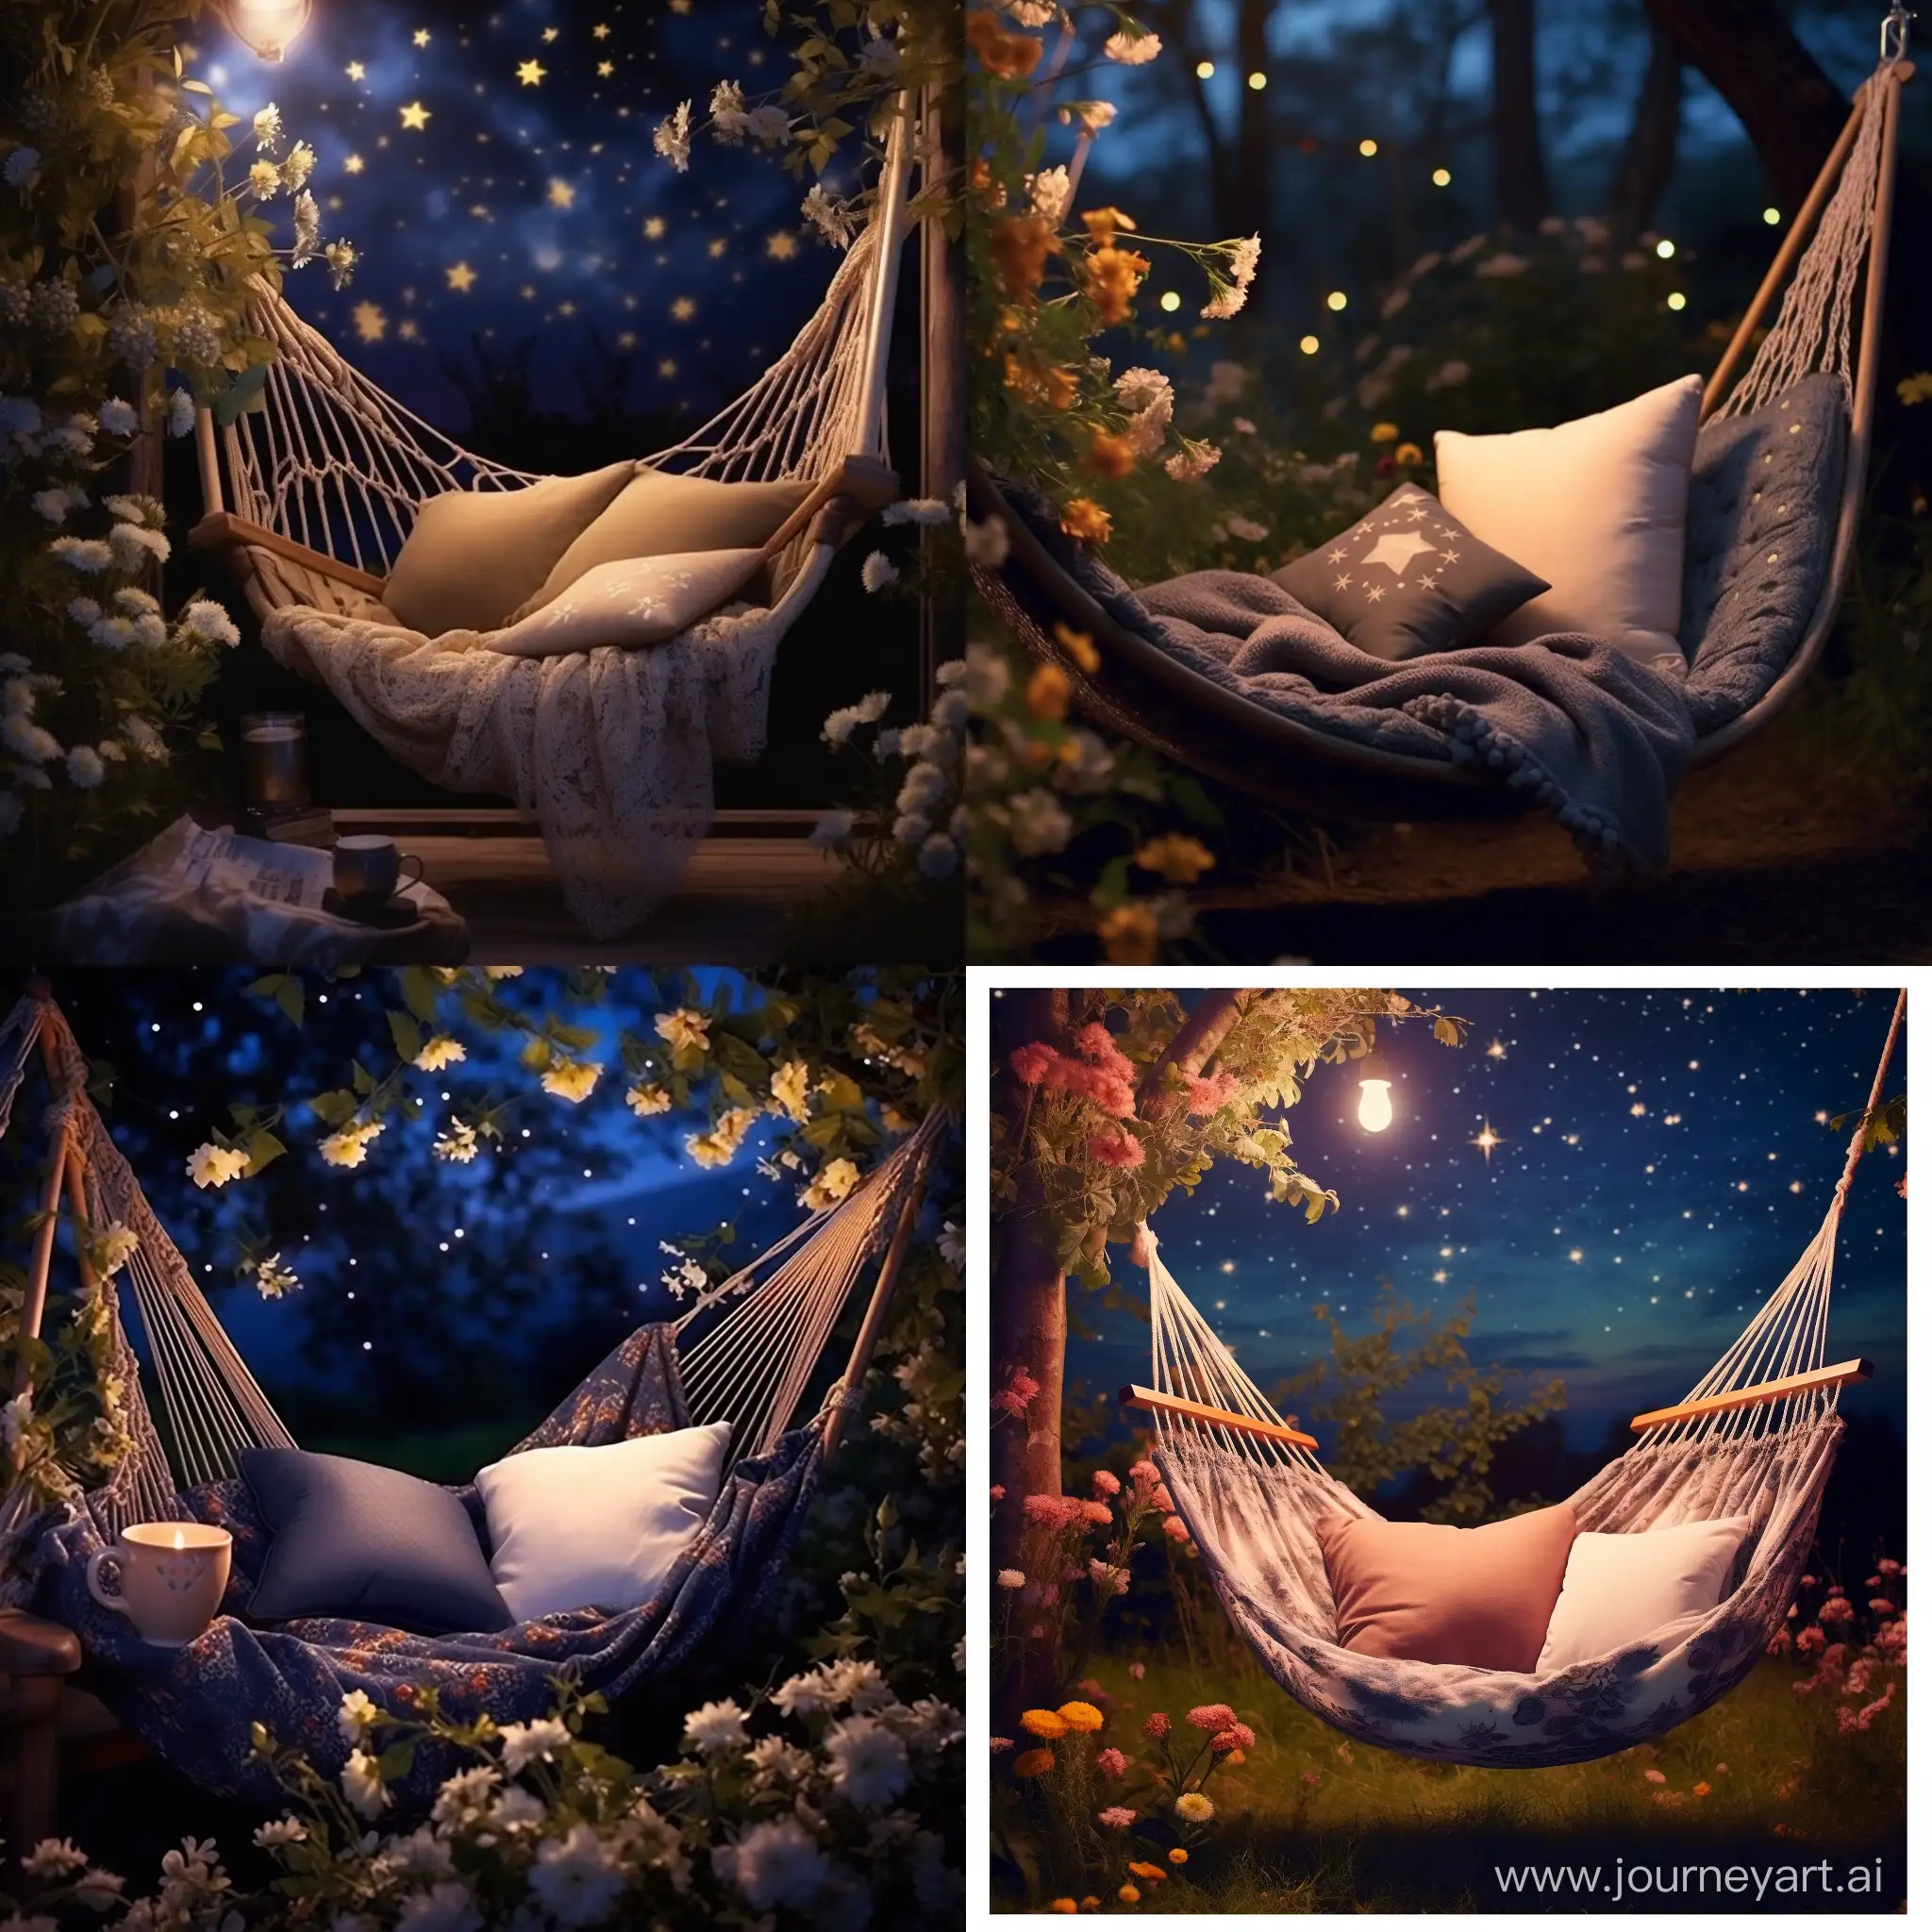 подушка и одеяло в гамаке, в цветущем саду, ночь, полумесяц луны, звёзды на небе, суперреализм, профессиональное фото, мелкие детали, детализация, красиво